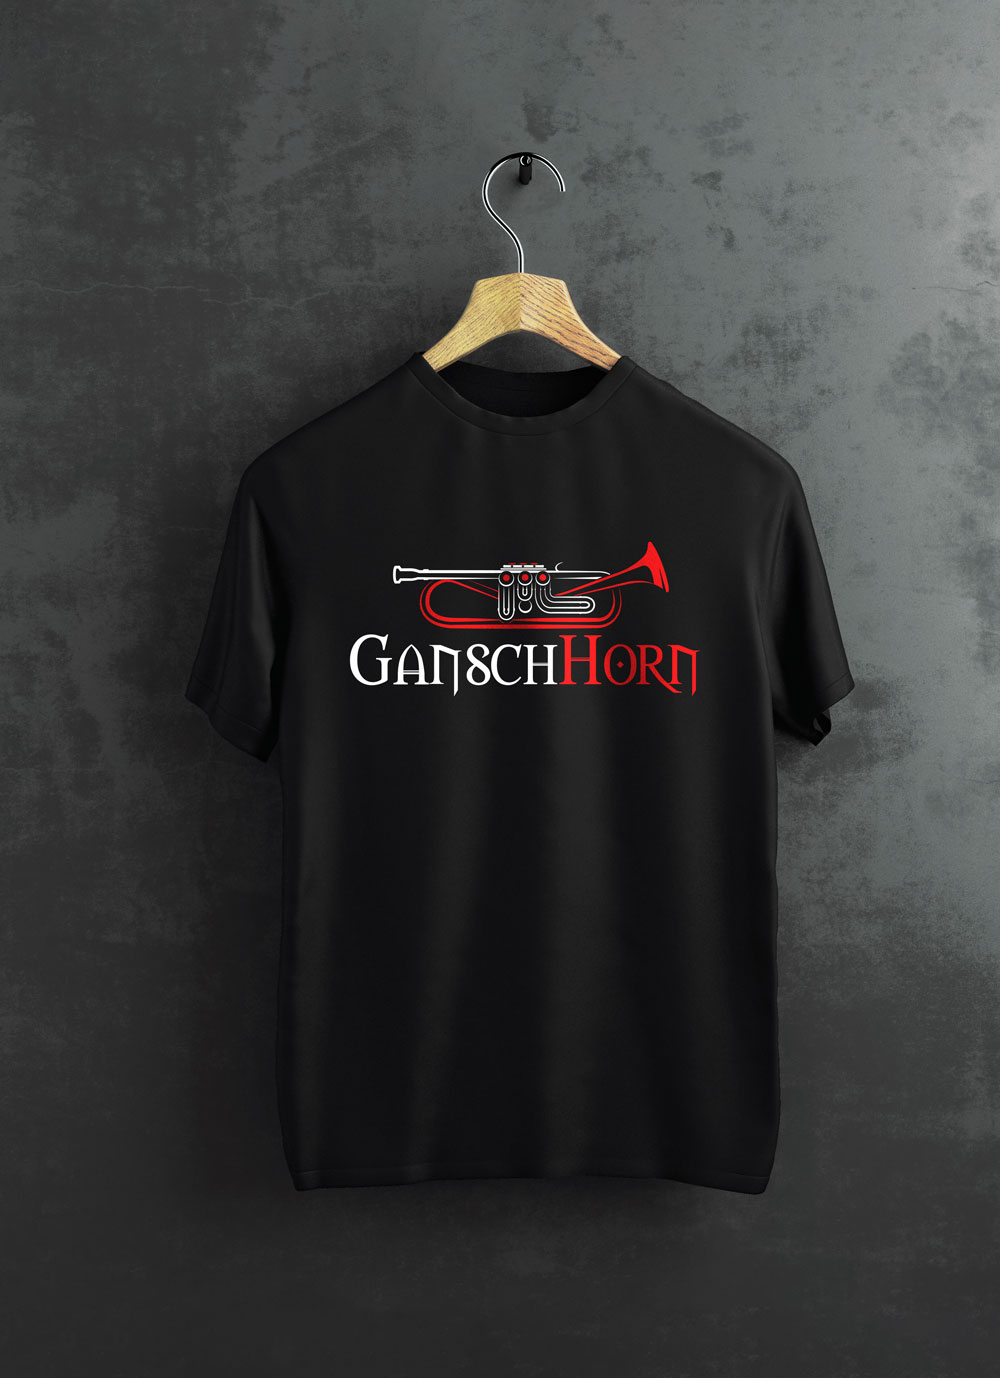 Schagerl T-Shirt Gansch Horn black Large 2019